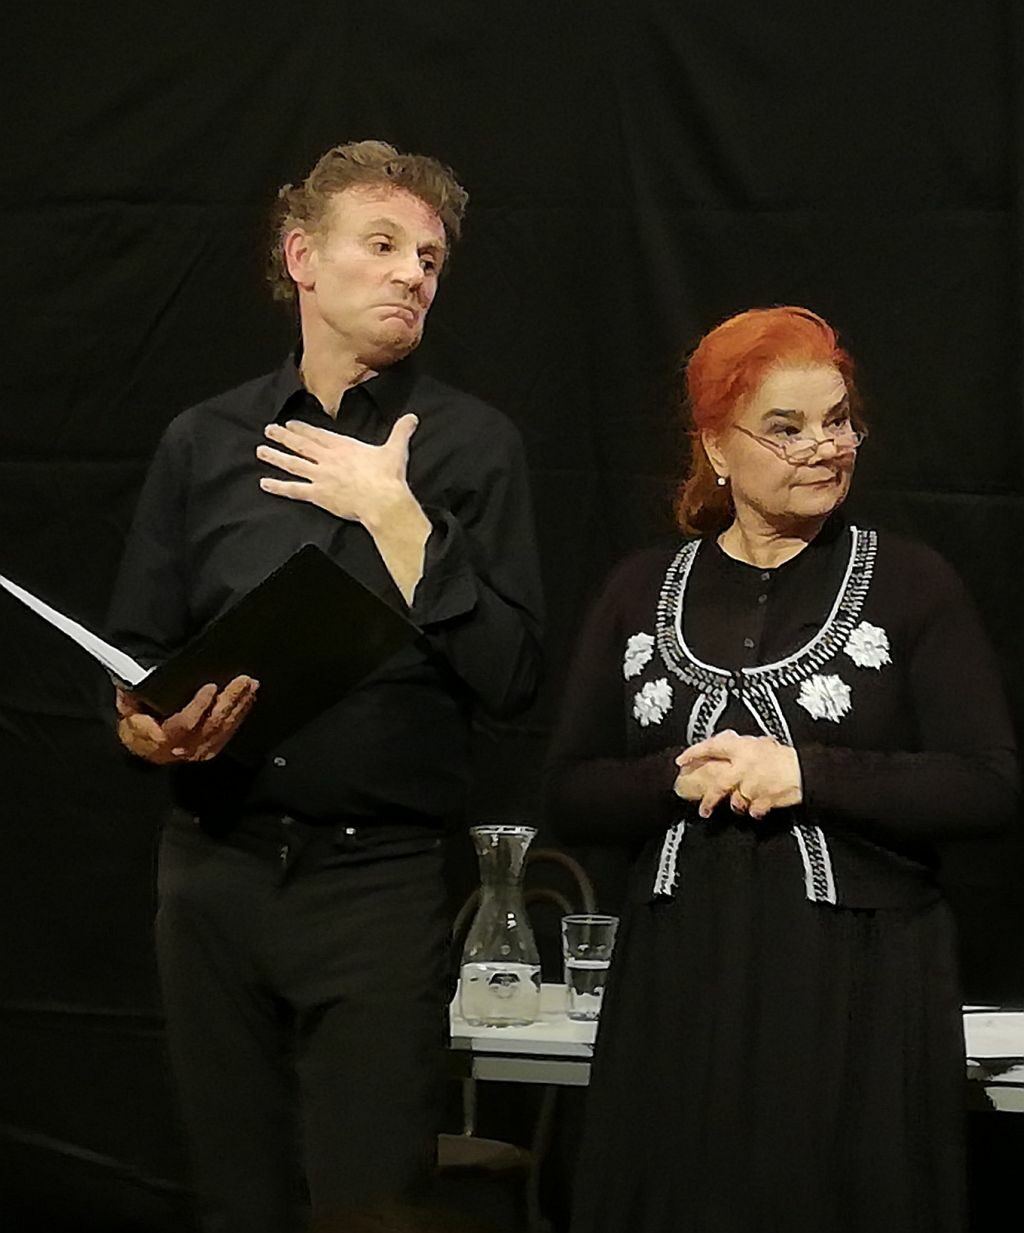 Brigitte Schönsleben-Thiery und Wolfgang Lesky brachten mit ihrer szenischen Lesung von Karl Valentin und Liesl Karlstadt das Publikum zum Lachen